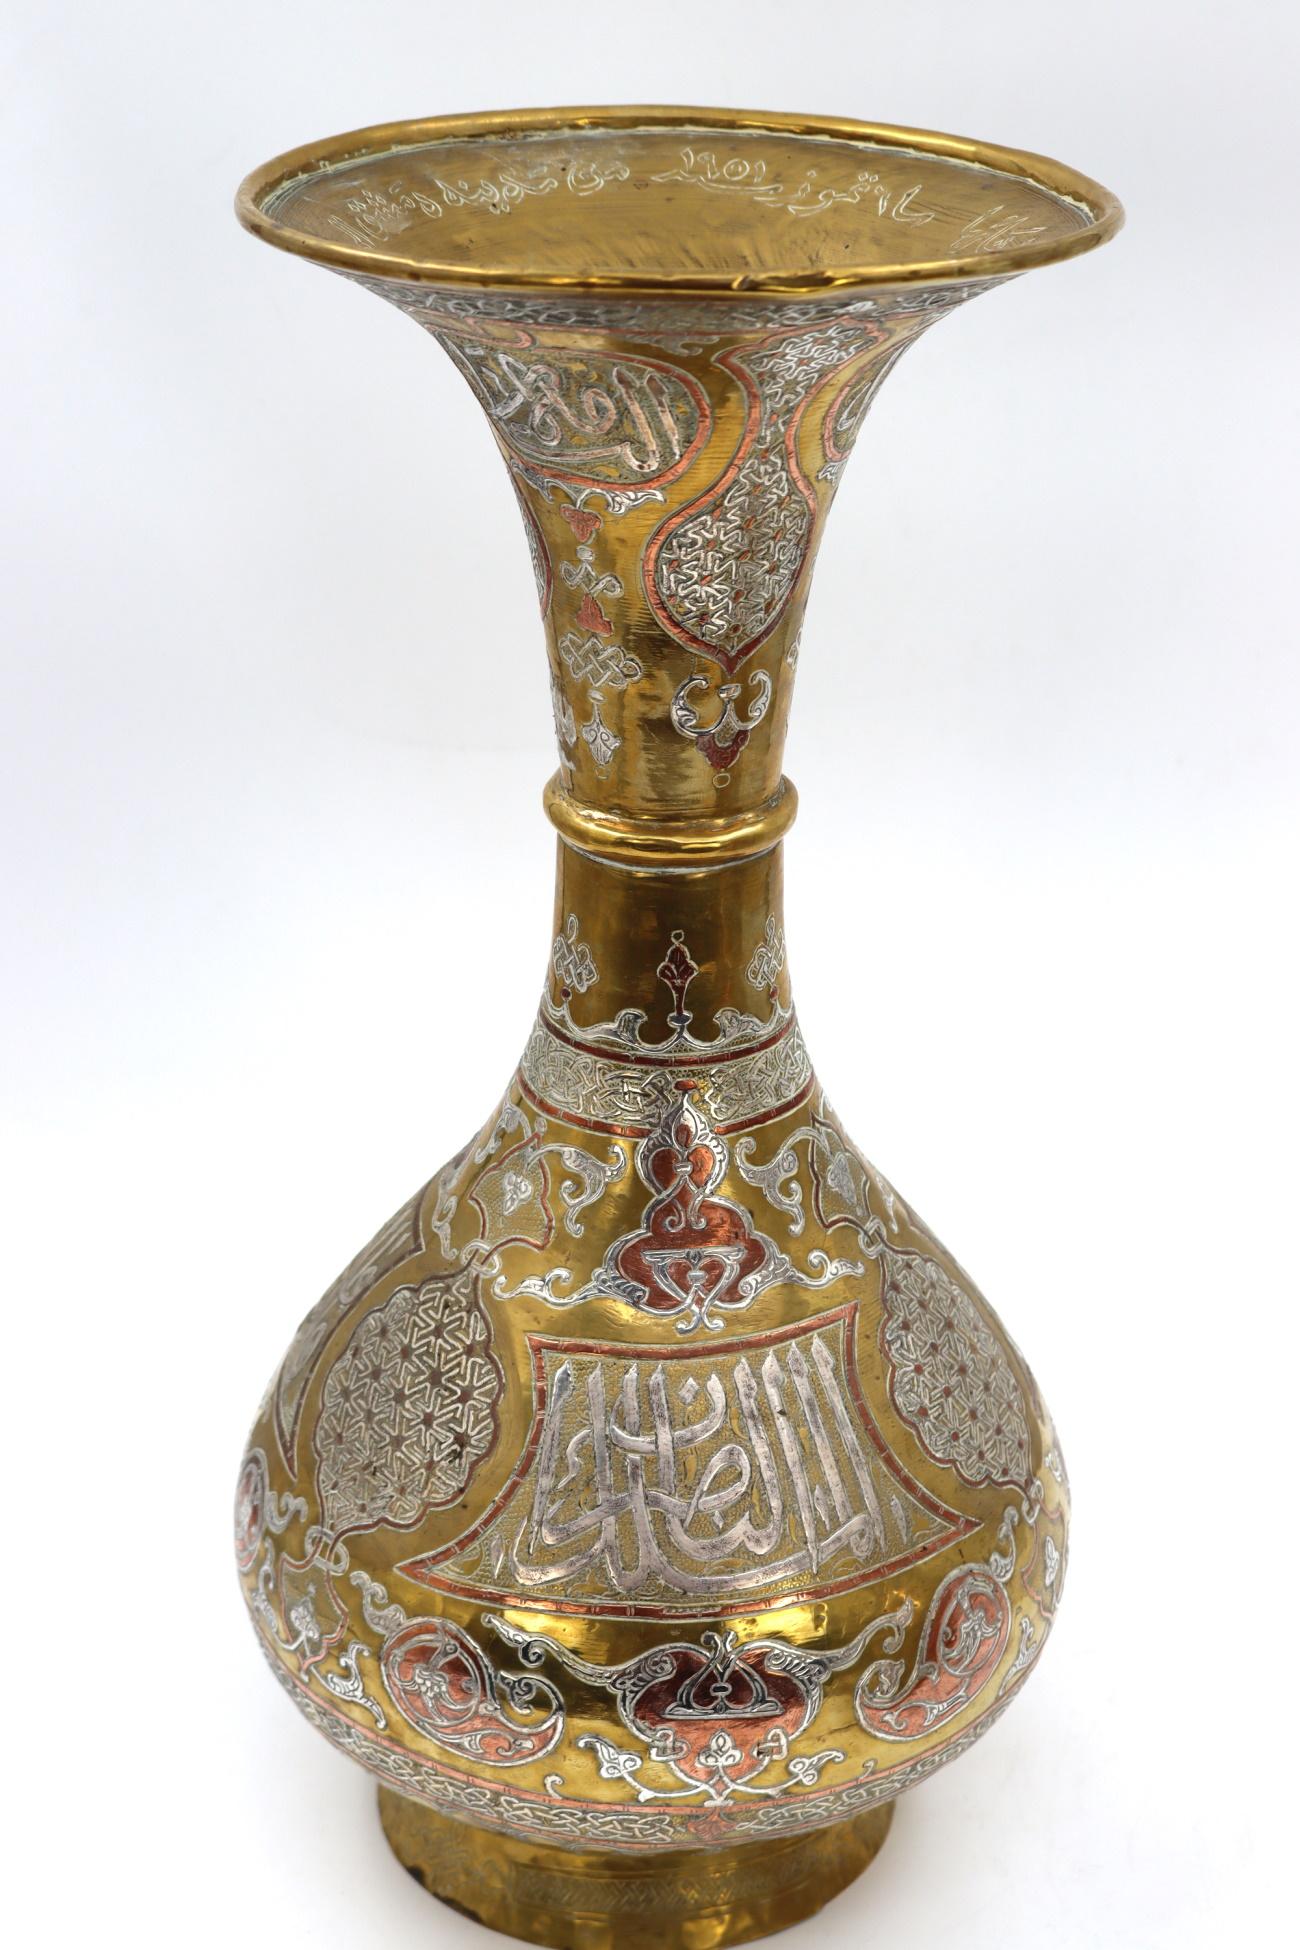 4ft glass vase